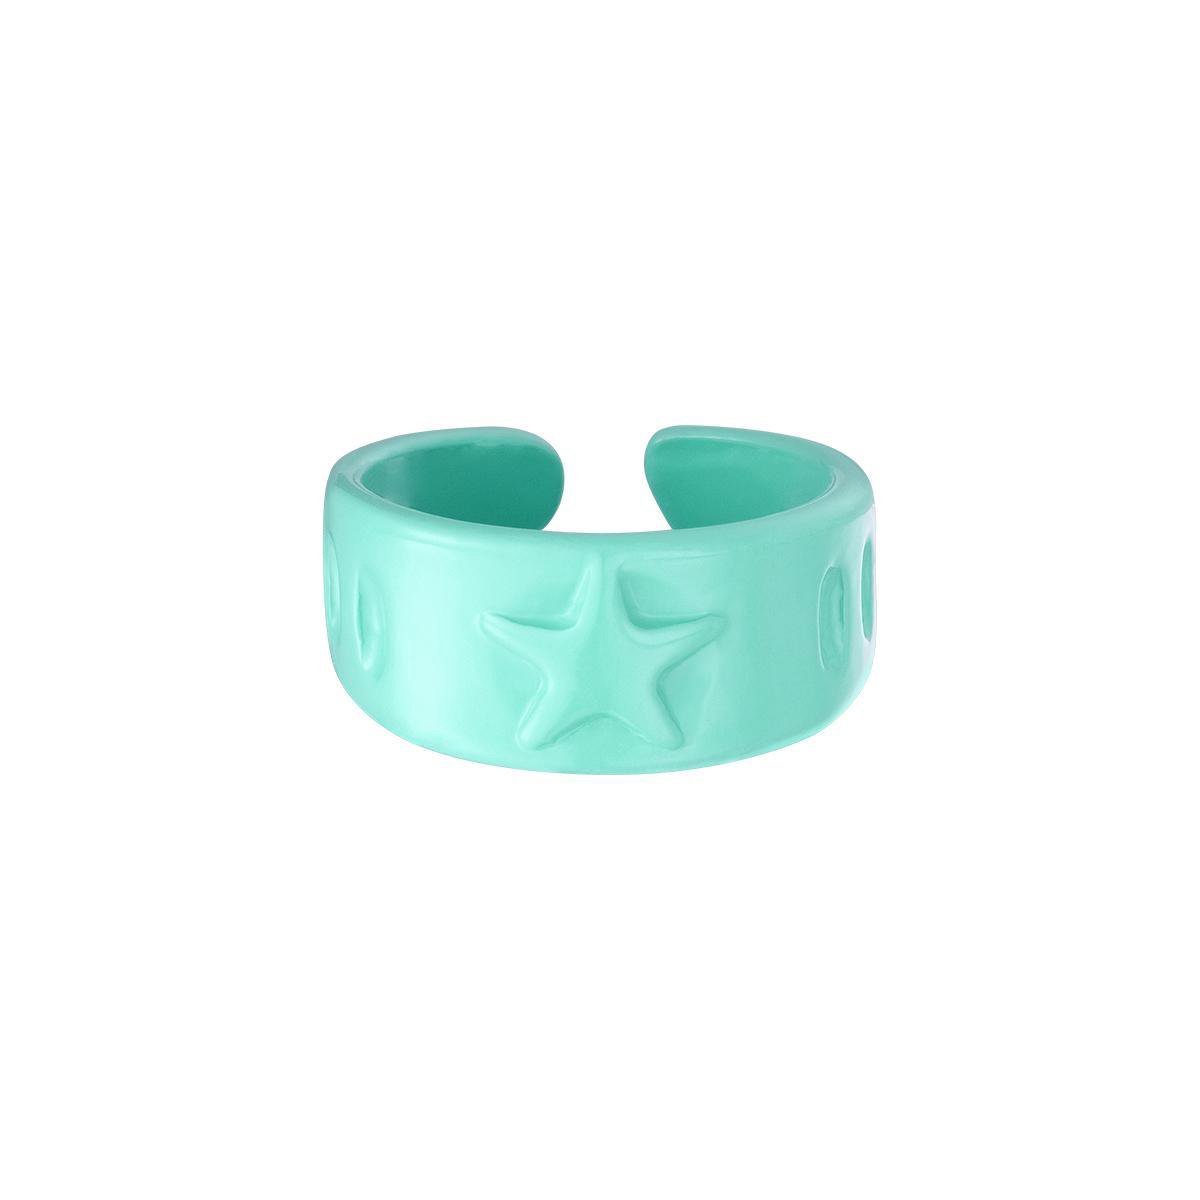 Bukuri Jewelry - Candy ring sterren - turquoise - groen - verstelbaar